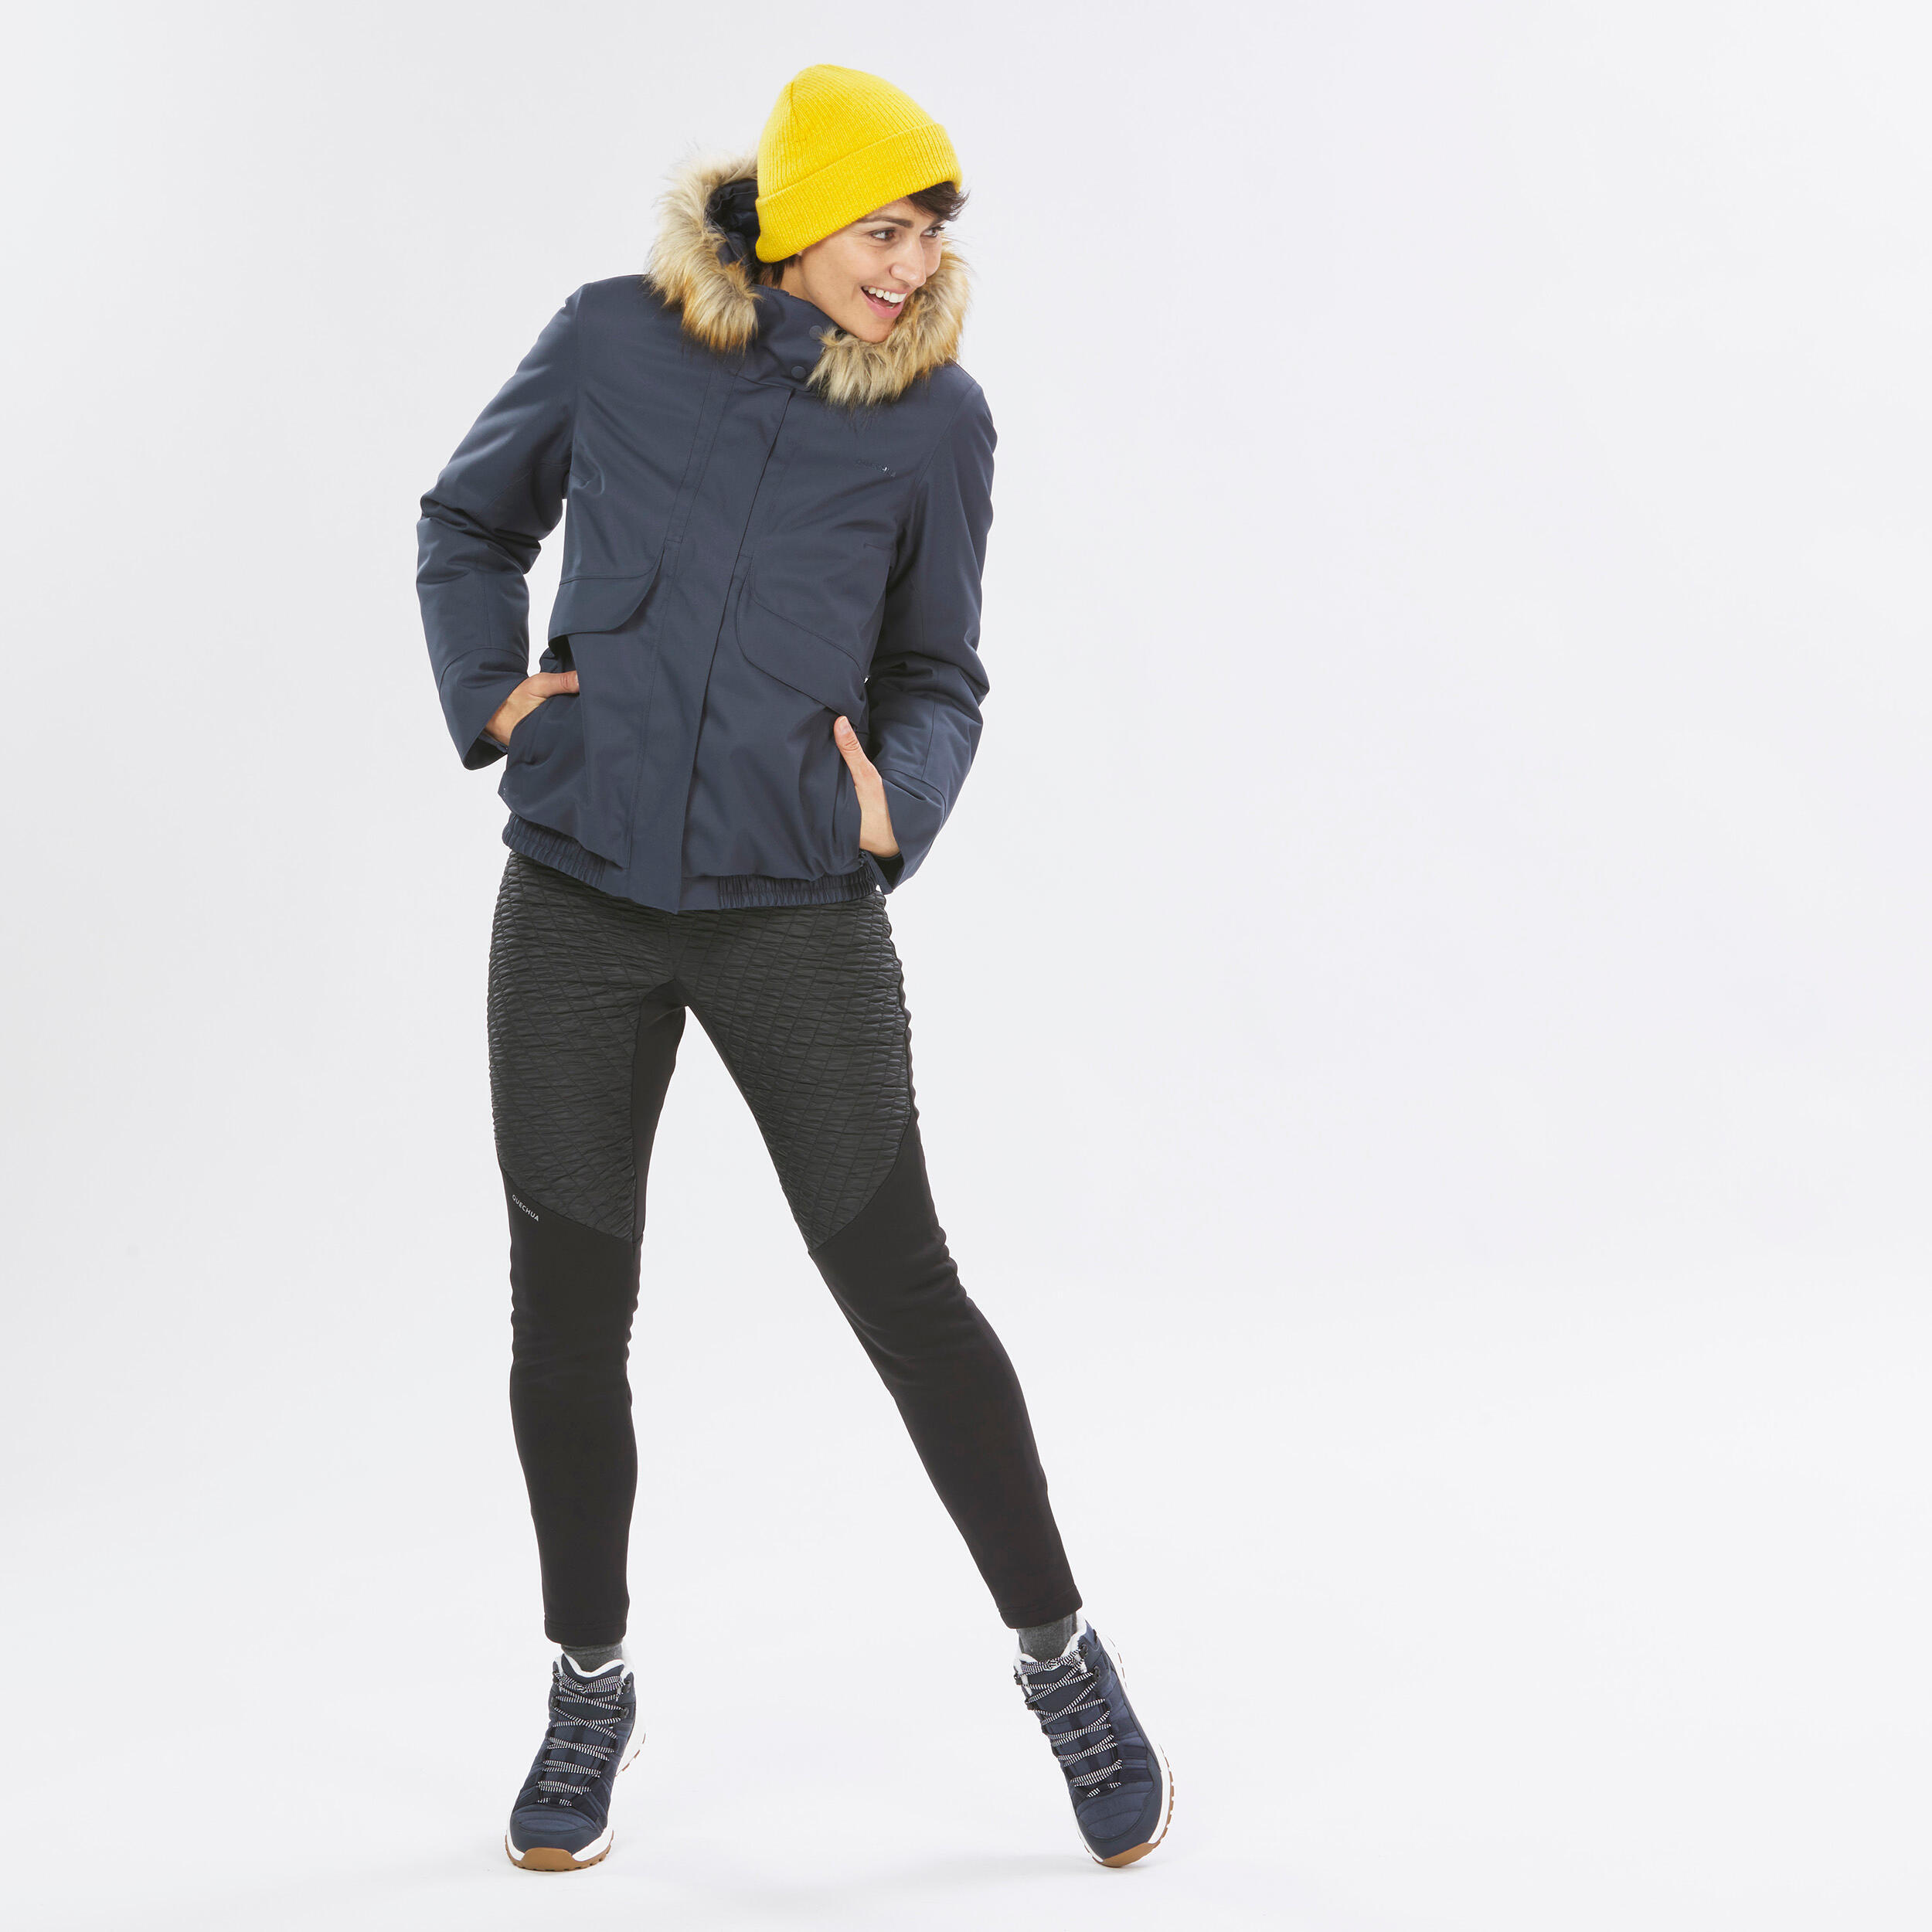 Women’s waterproof winter hiking jacket - SH500 -8°C 13/14